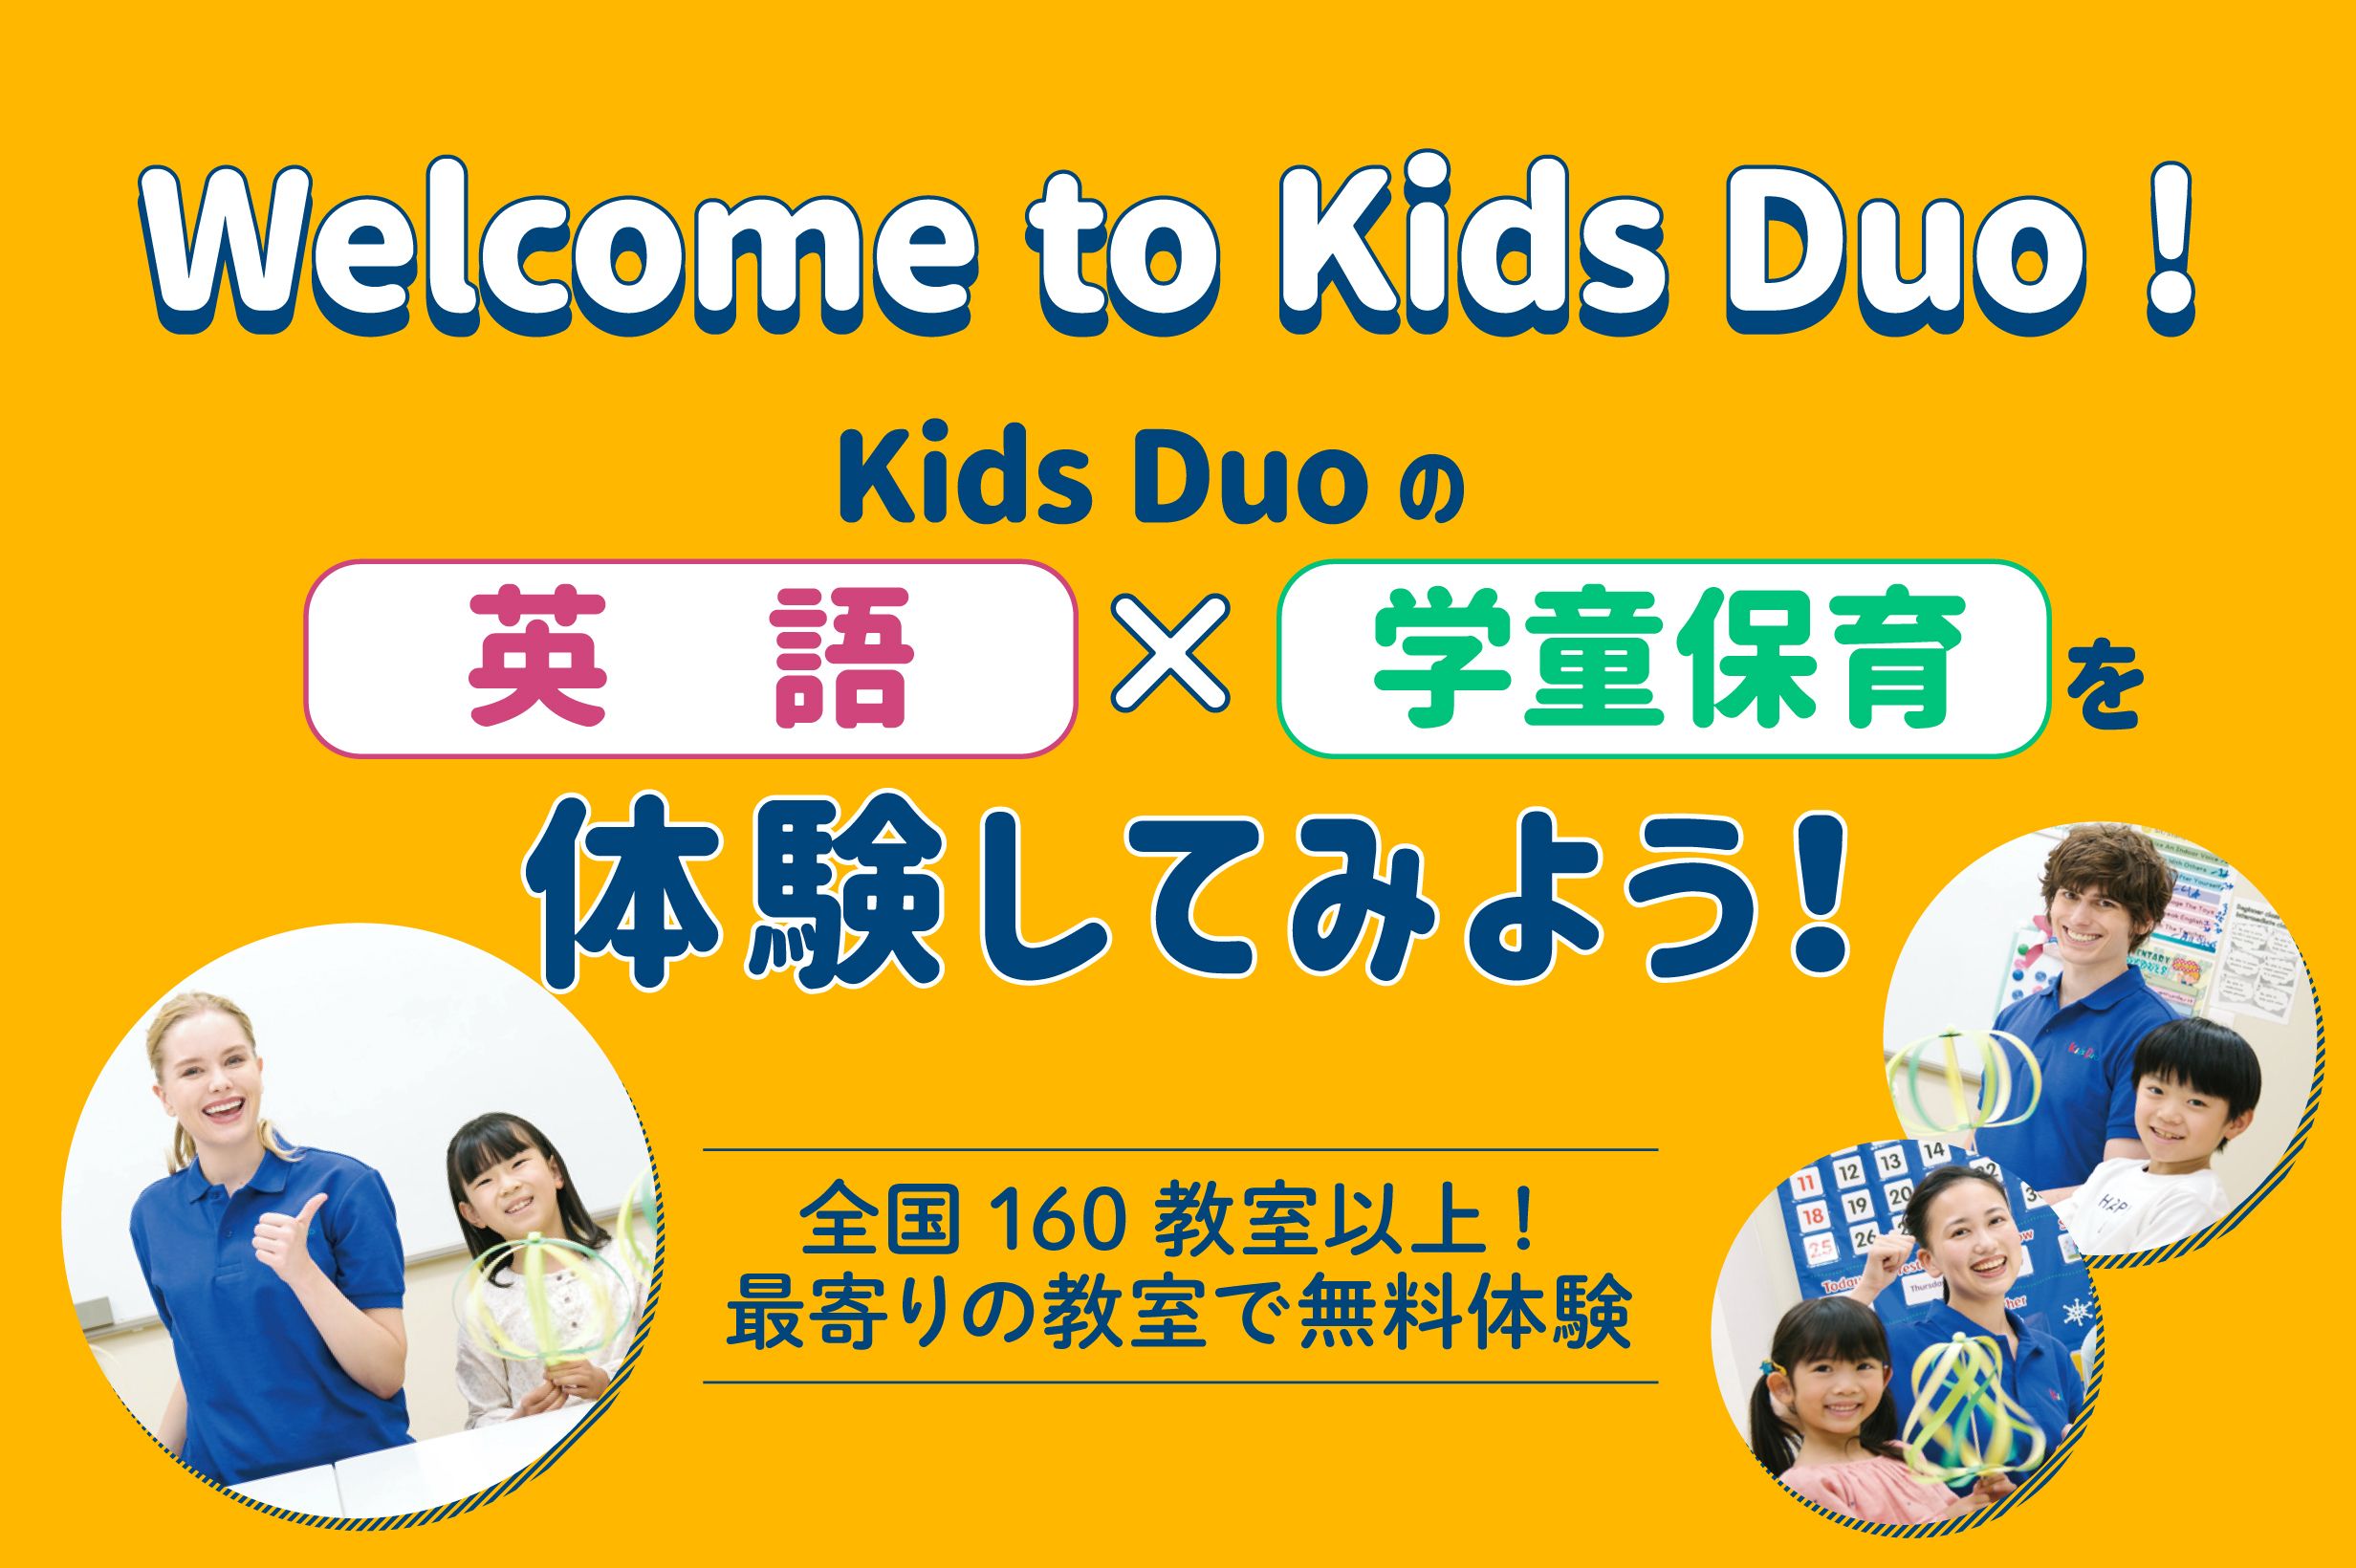 戸田公園 Kids Duo キッズデュオ アフタースクール 英語学童保育スクール 埼玉県戸田市